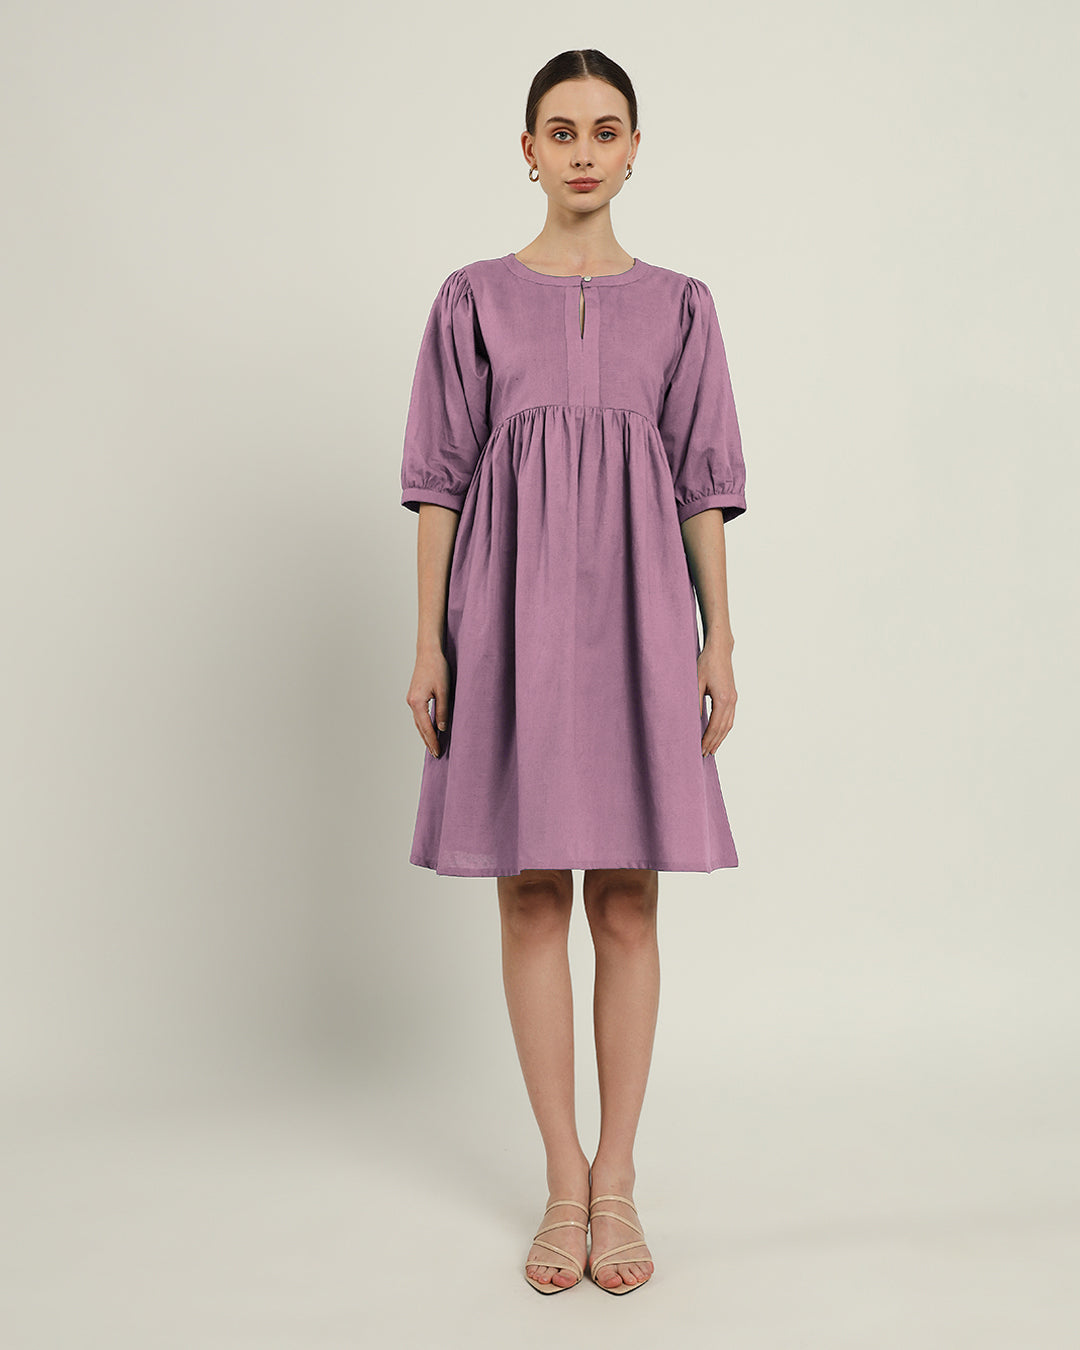 The Aira Purple Swirl Dress